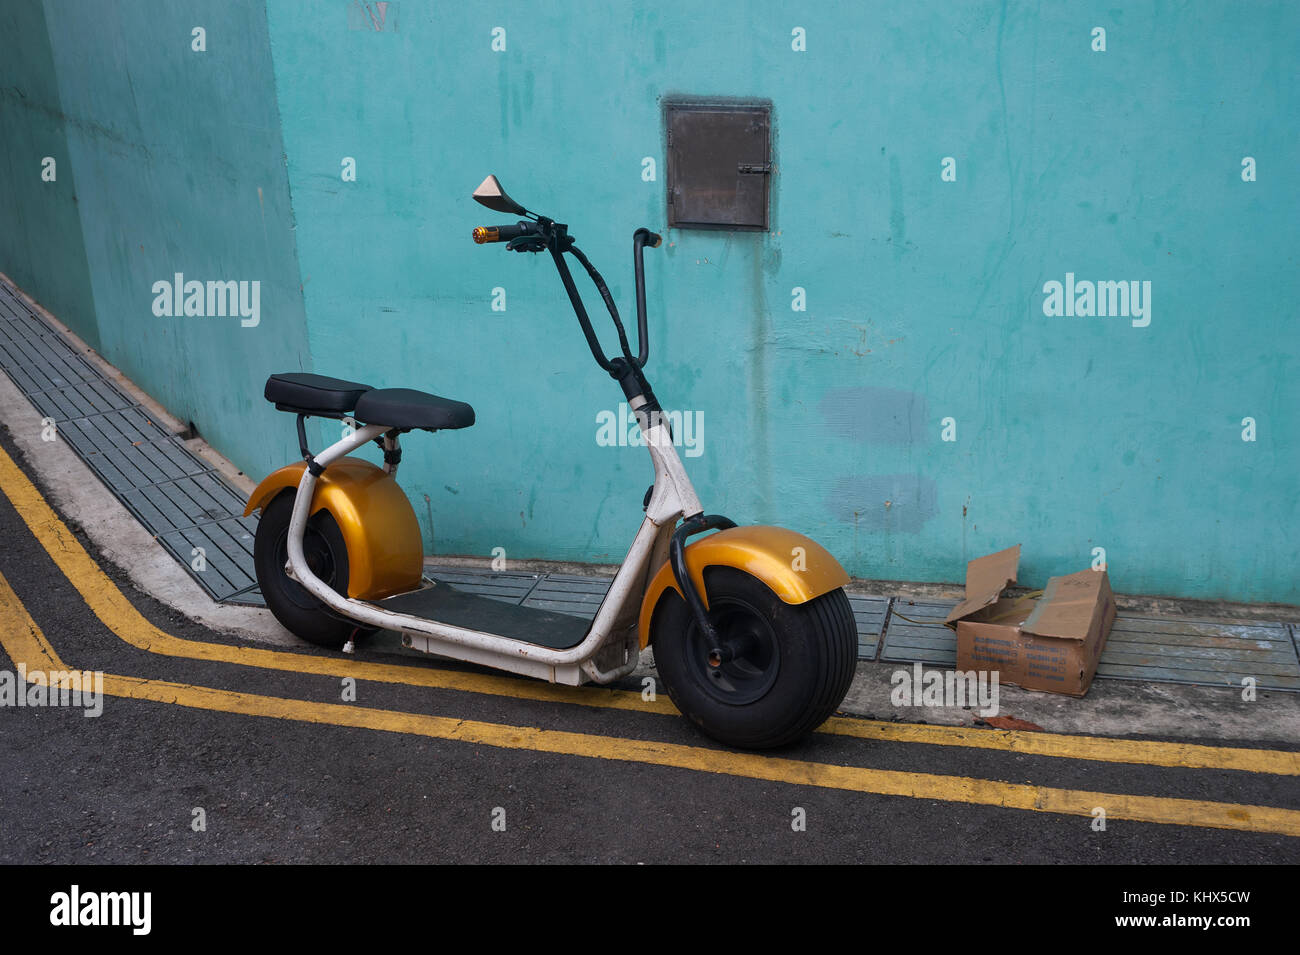 03.11.2017, Singapur, Republik Singapur, Asien - ein e-Roller ist in einer Gasse in Chinatown geparkt. Stockfoto